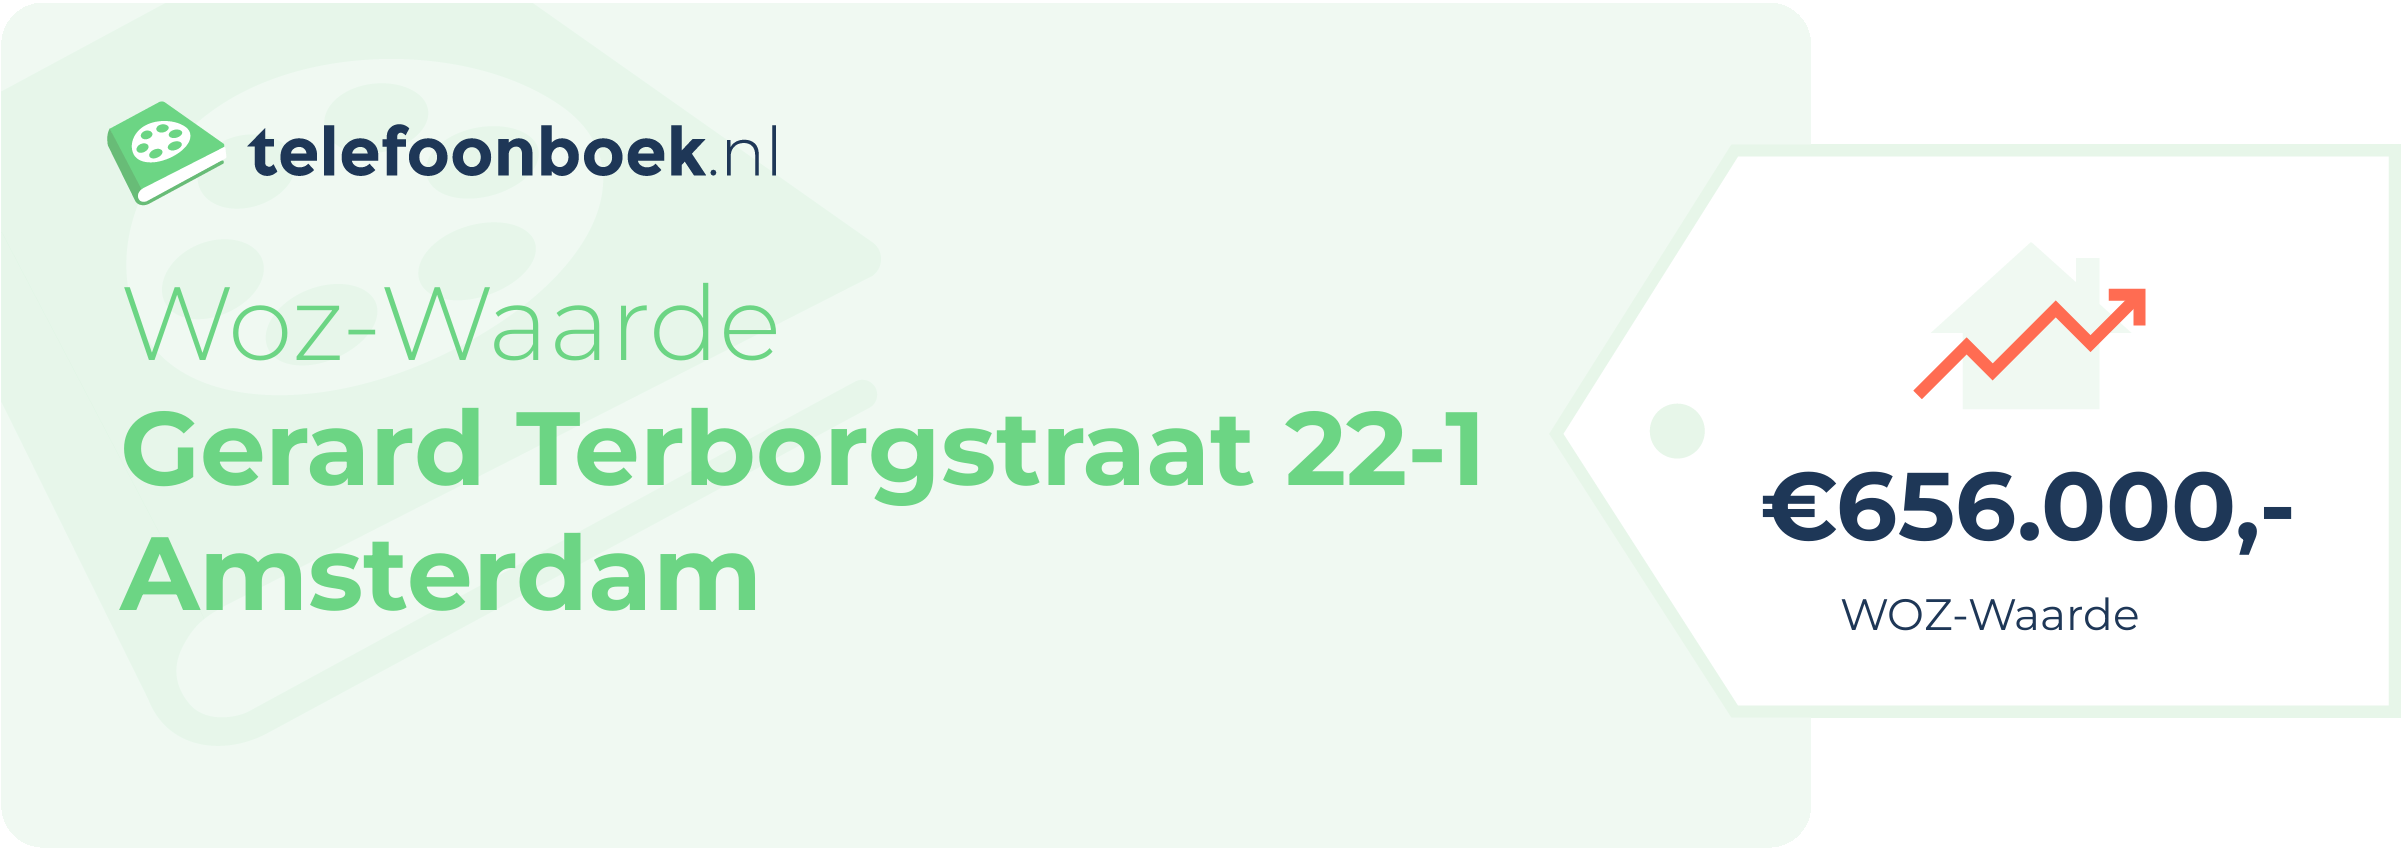 WOZ-waarde Gerard Terborgstraat 22-1 Amsterdam